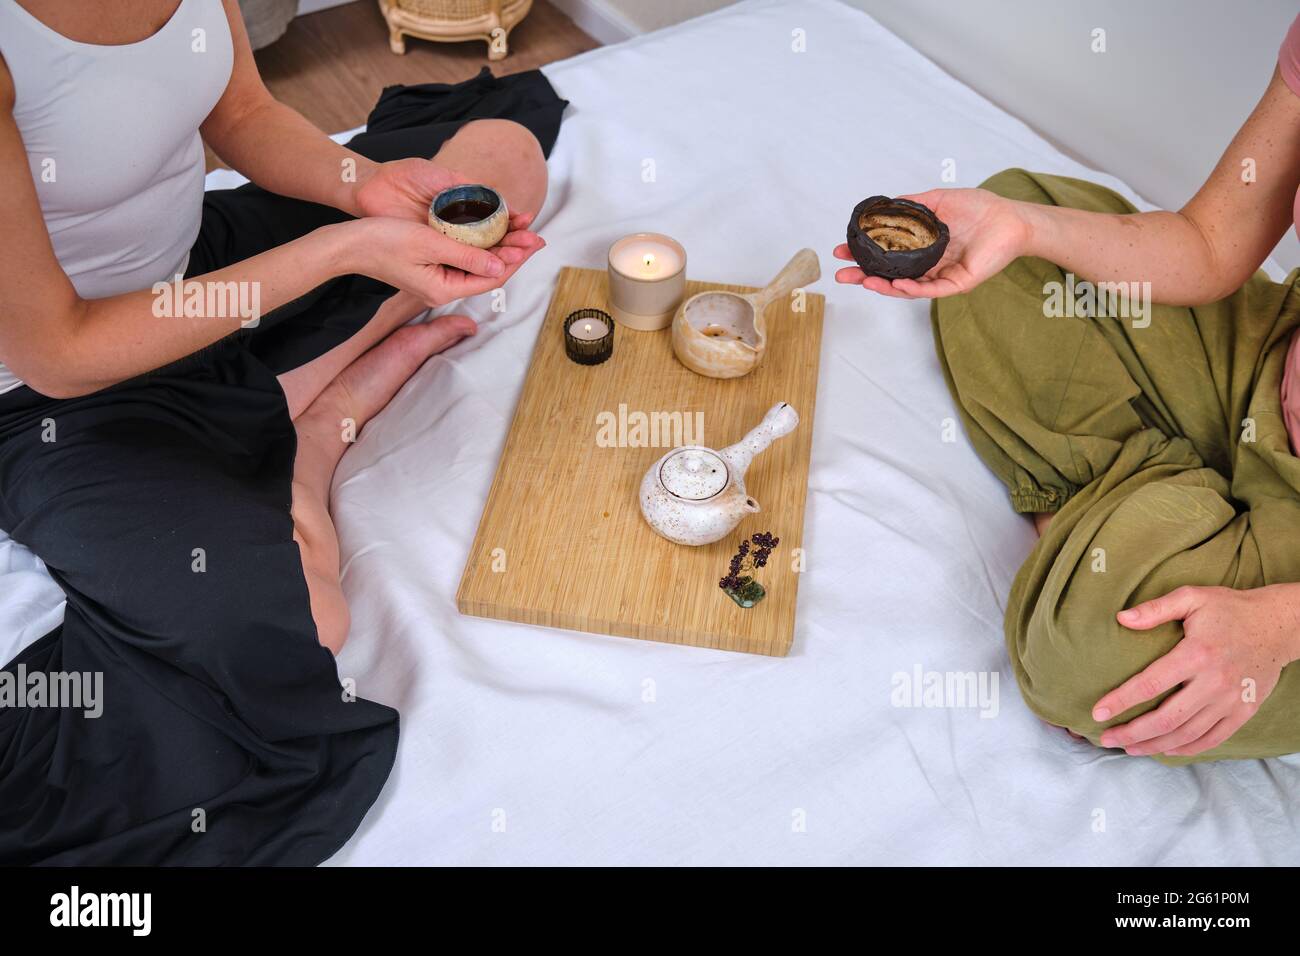 Zwei Frauen halten eine chinesische Teezeremonie auf einem Heimbett im Schlafzimmer, einem Tablett mit einer Teekannen, Tassen und Kerzen ab Stockfoto